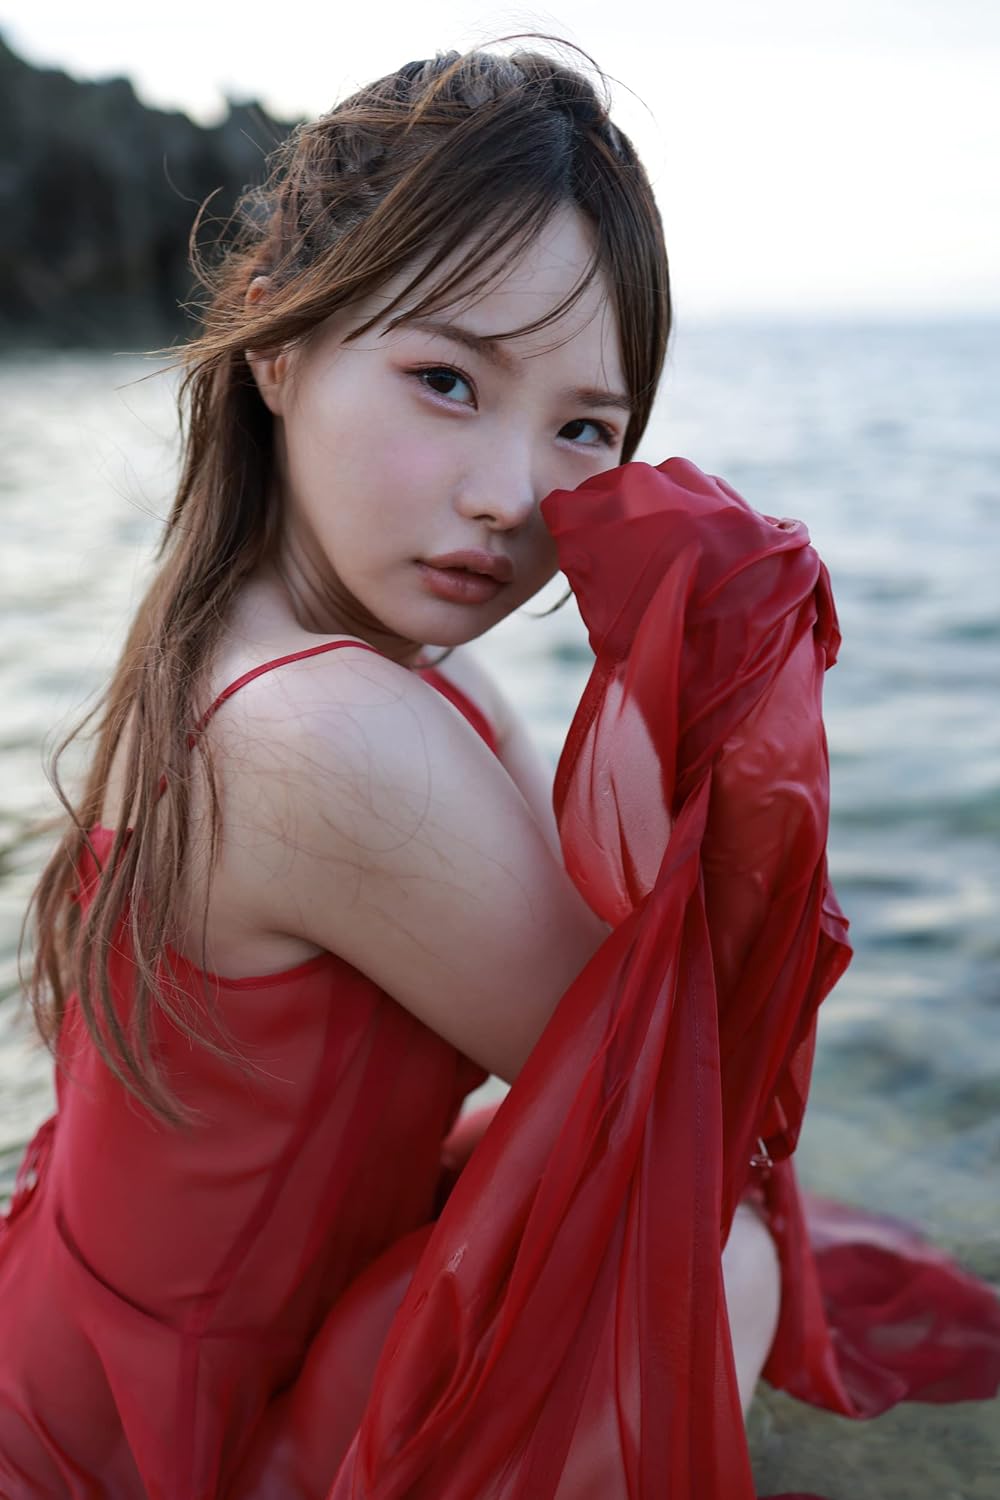 Ichika Matsumoto Photo Book "Holic"